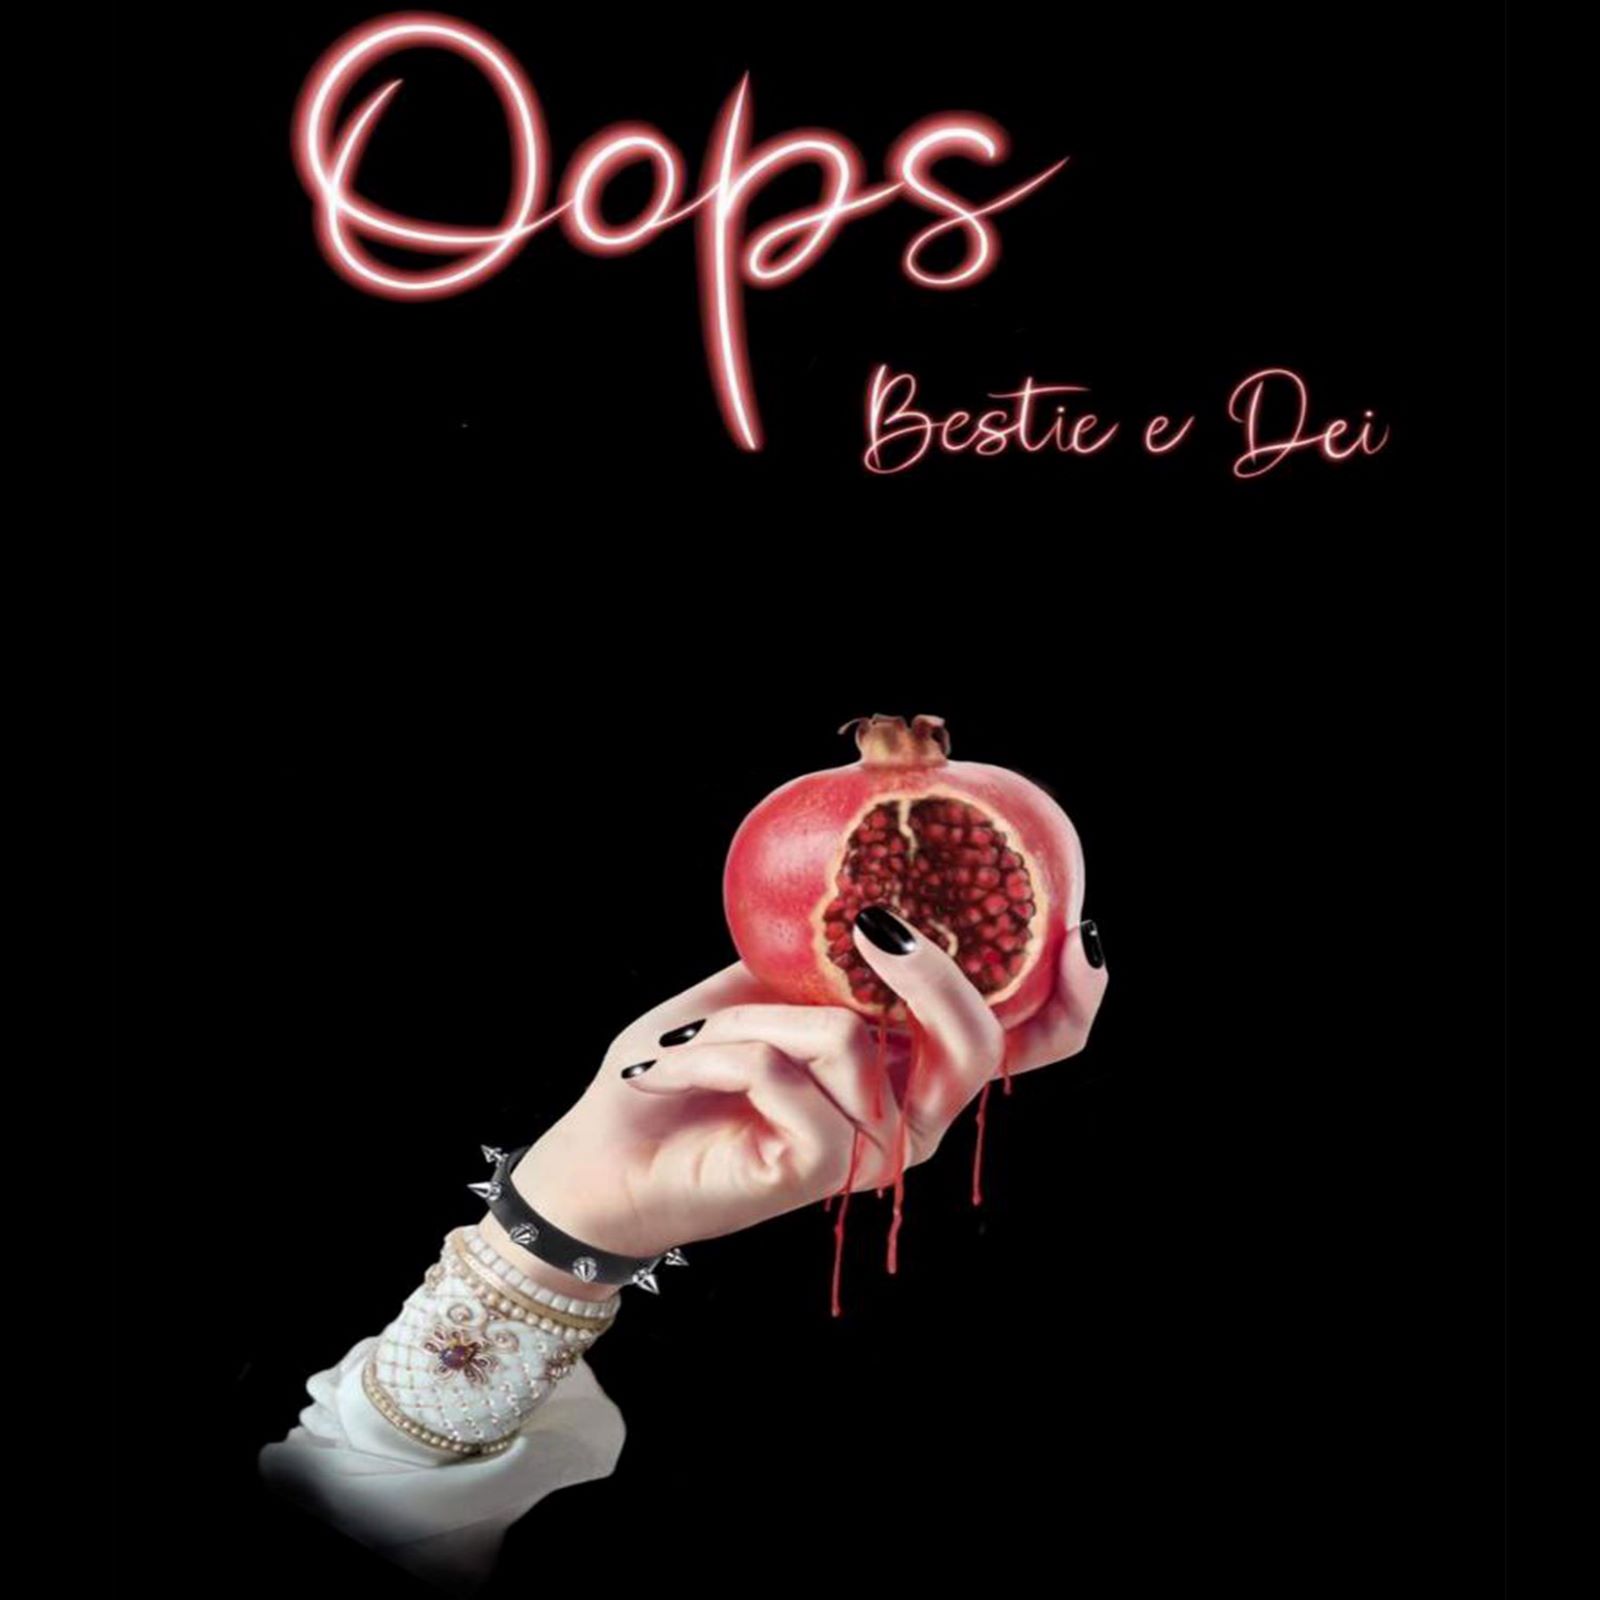 La band romana degli Oops pubblica l’album “Bestie e Dei”